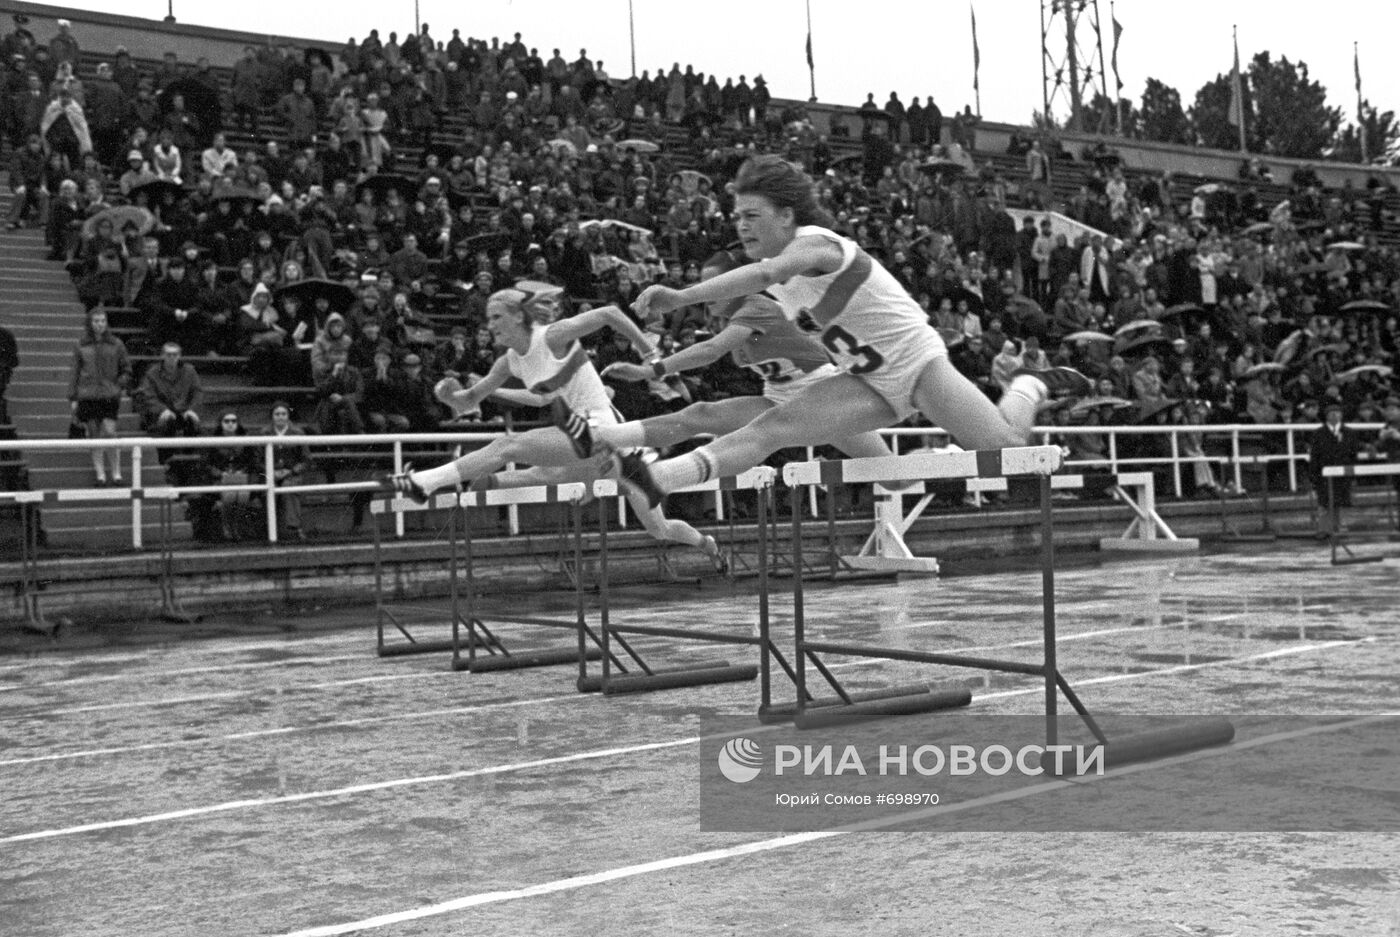 Товарищеский матч по легкой атлетике между командами СССР и ФРГ